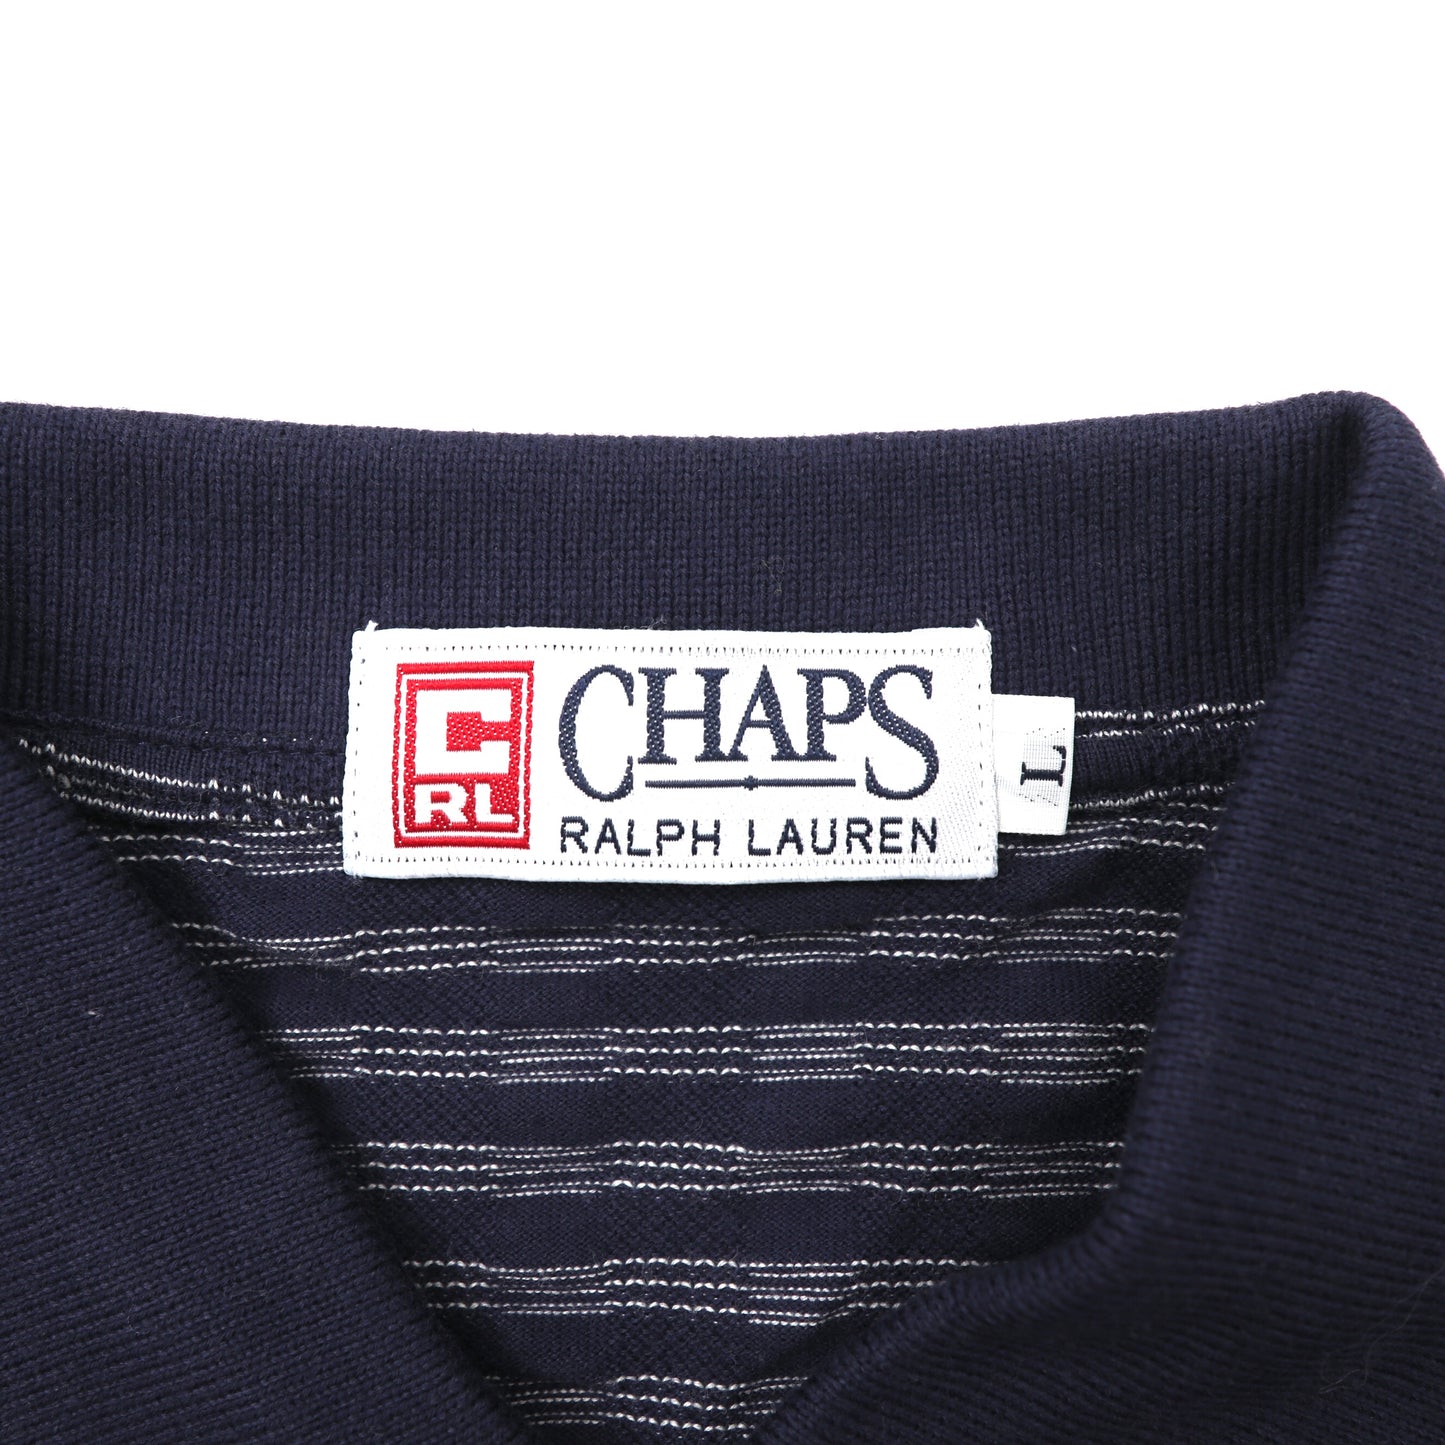 CHAPS RALPH LAUREN ポロシャツ L ネイビー ボーダー コットン 未使用品